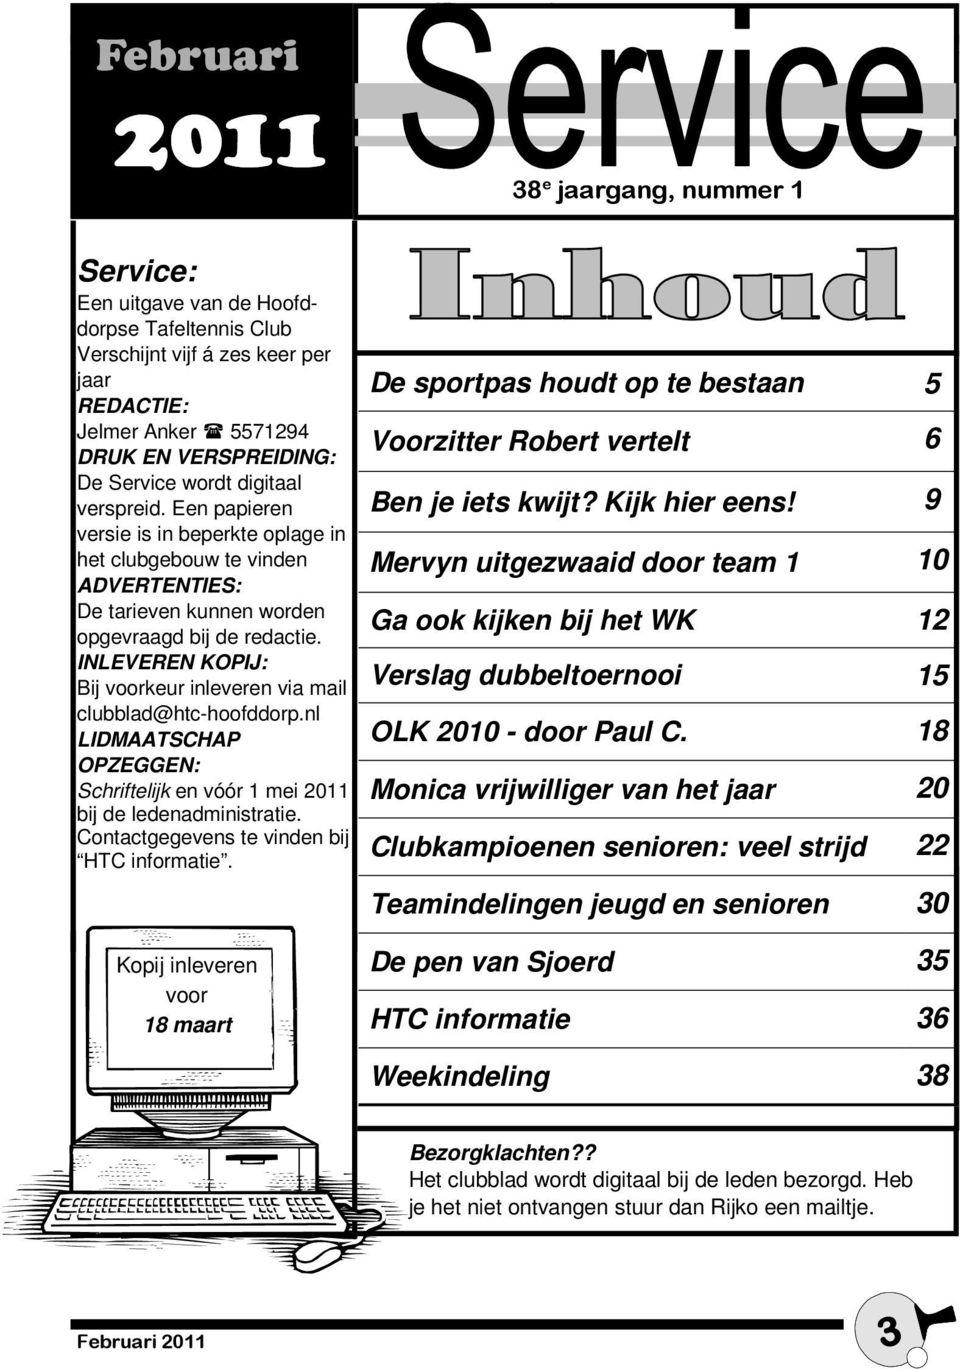 INLEVEREN KOPIJ: Bij voorkeur inleveren via mail clubblad@htc-hoofddorp.nl LIDMAATSCHAP OPZEGGEN: Schriftelijk en vóór 1 mei 2011 bij de ledenadministratie.